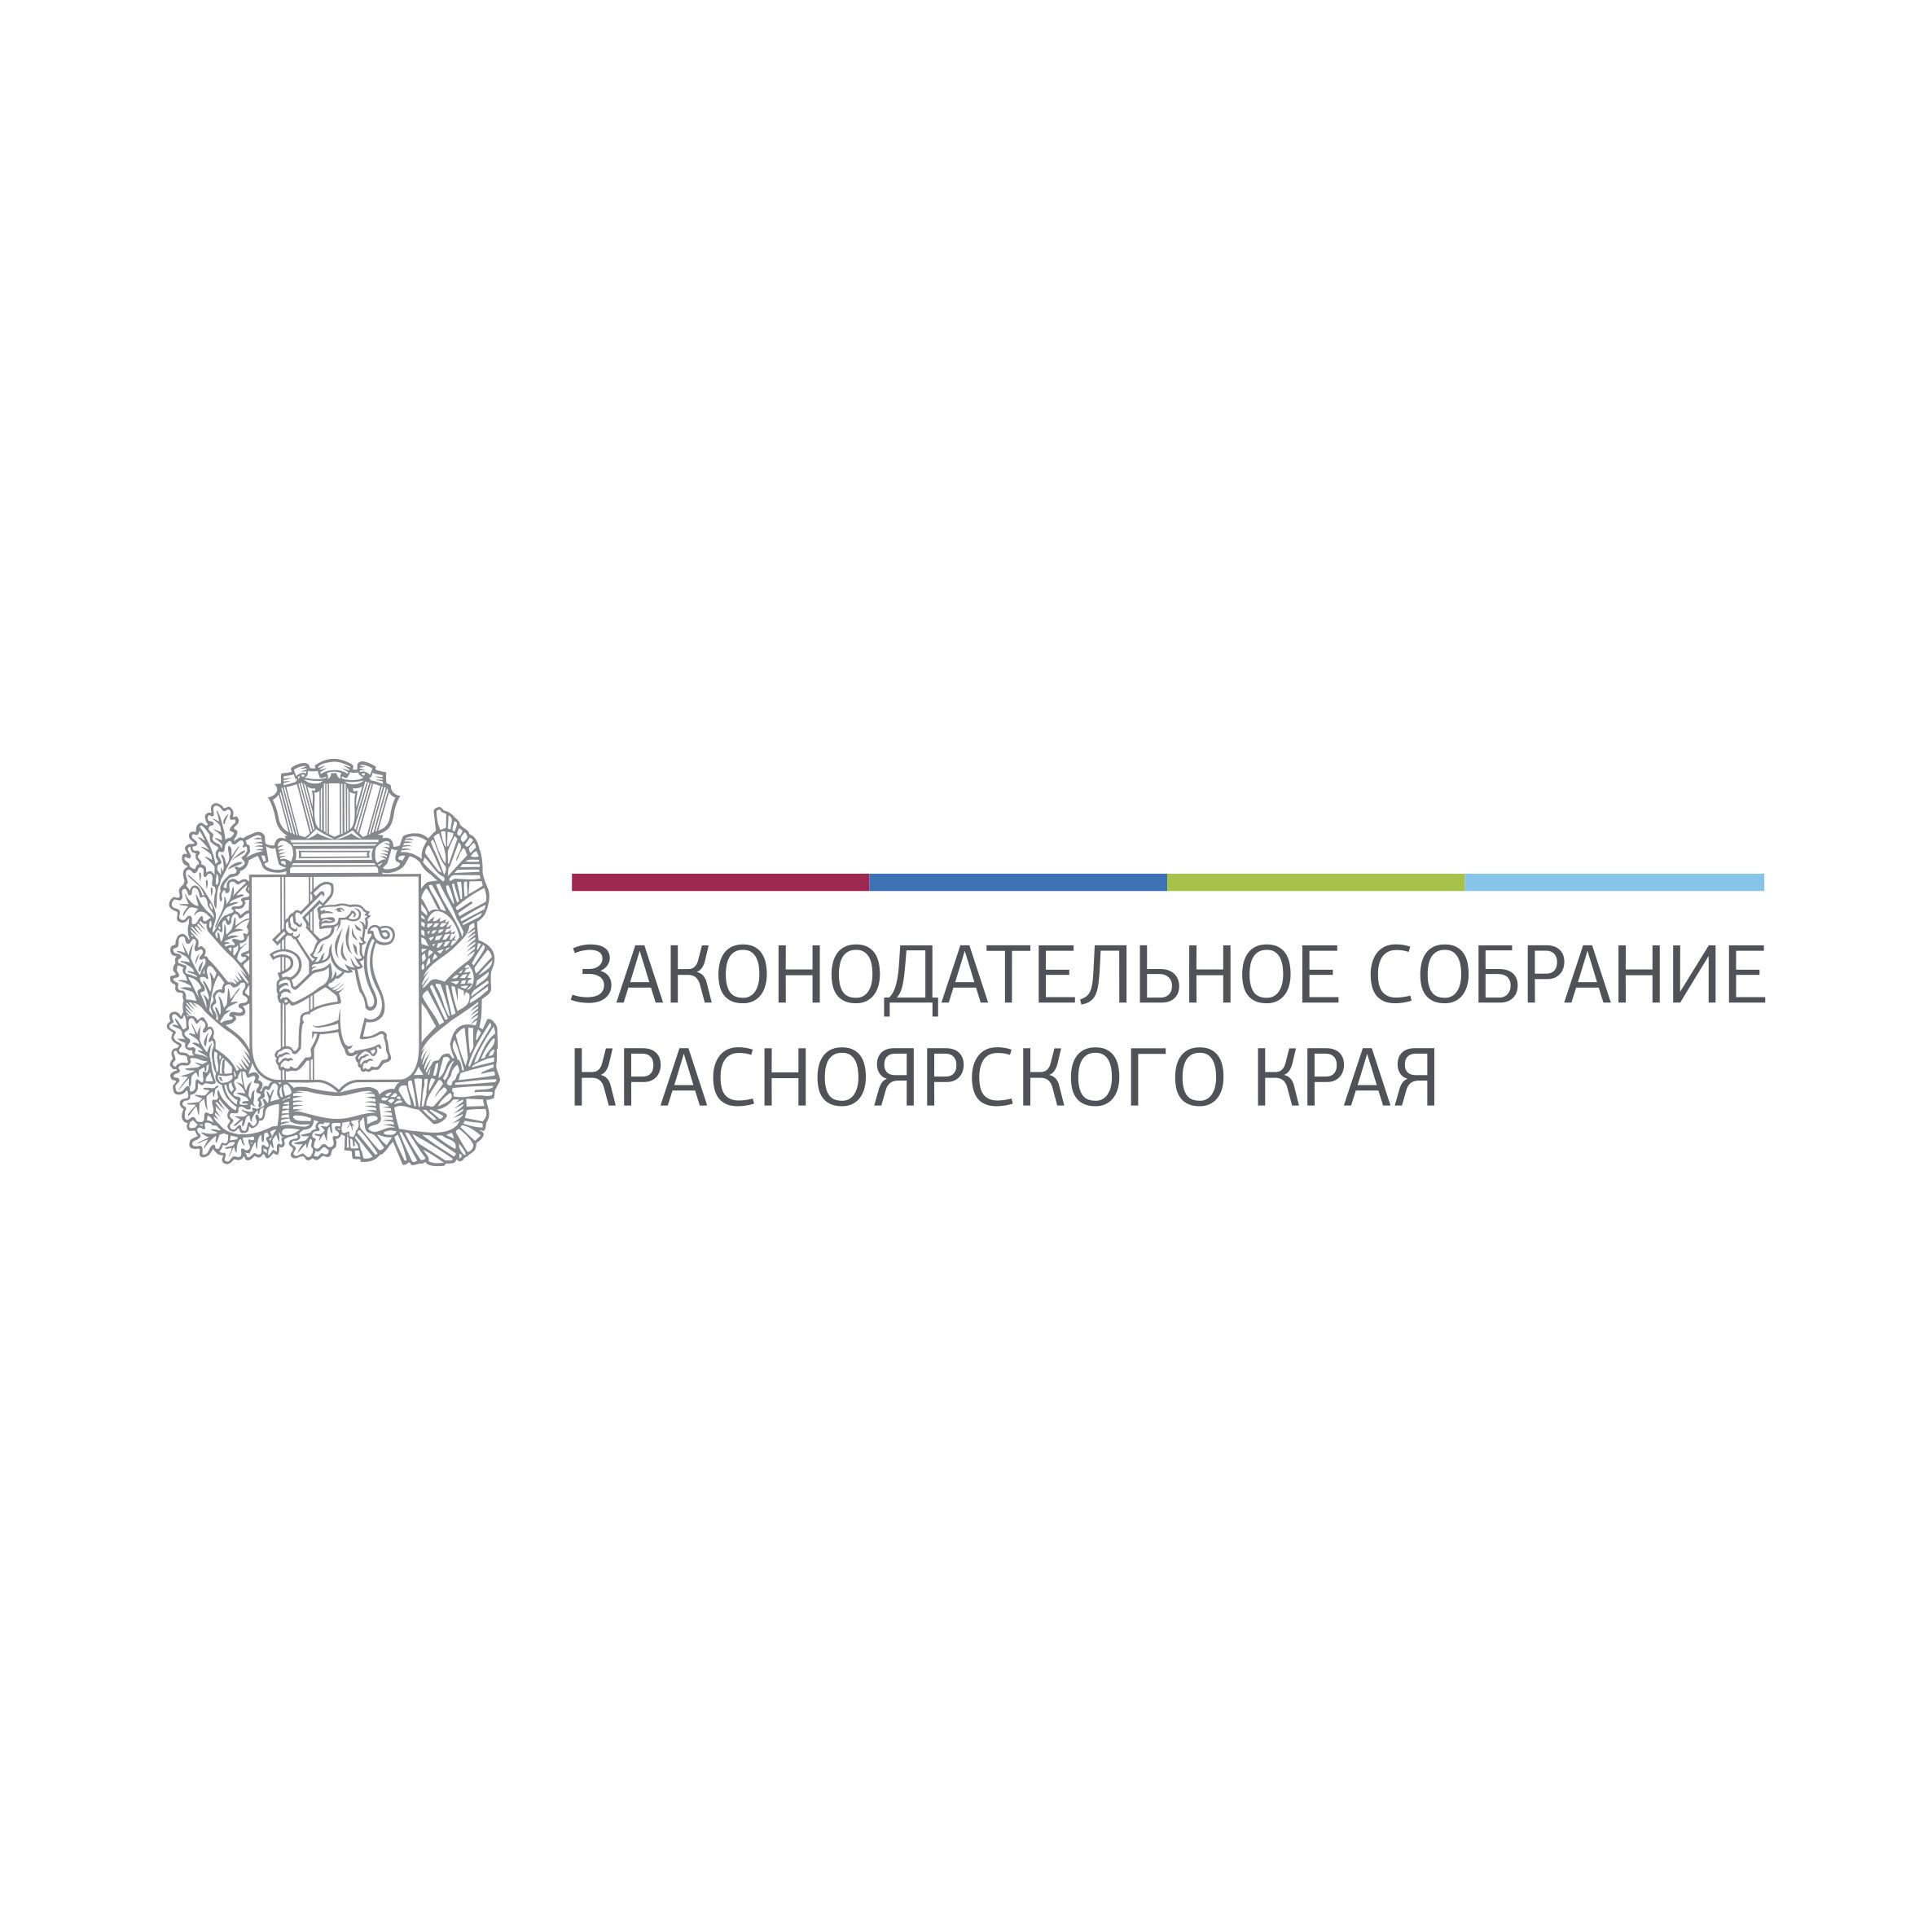 Законодательное собрание красноярского края